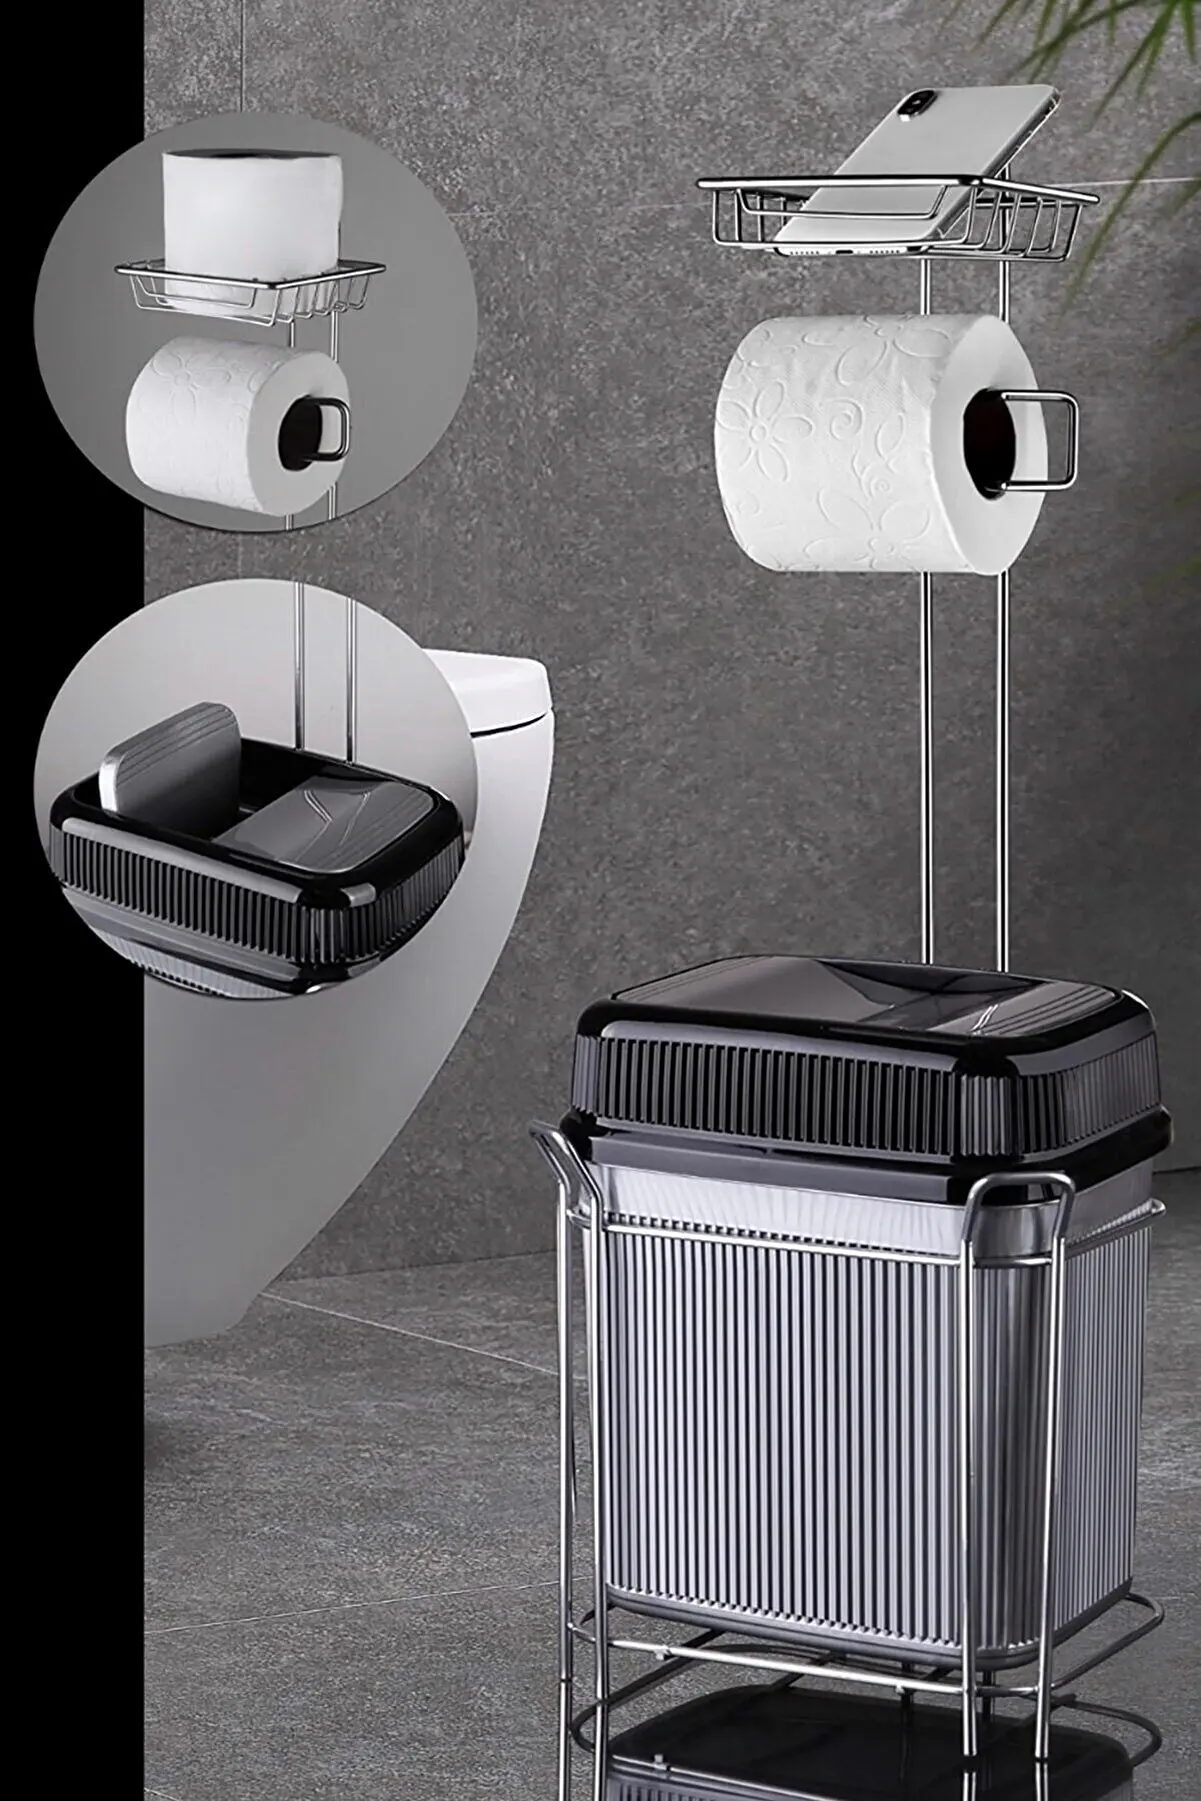 

Избыточный держатель туалетной бумаги и угловая серая мусорная корзина дизайн для украшения дома практичные аксессуары для ванной комнаты туалетная бумага 61x20 см